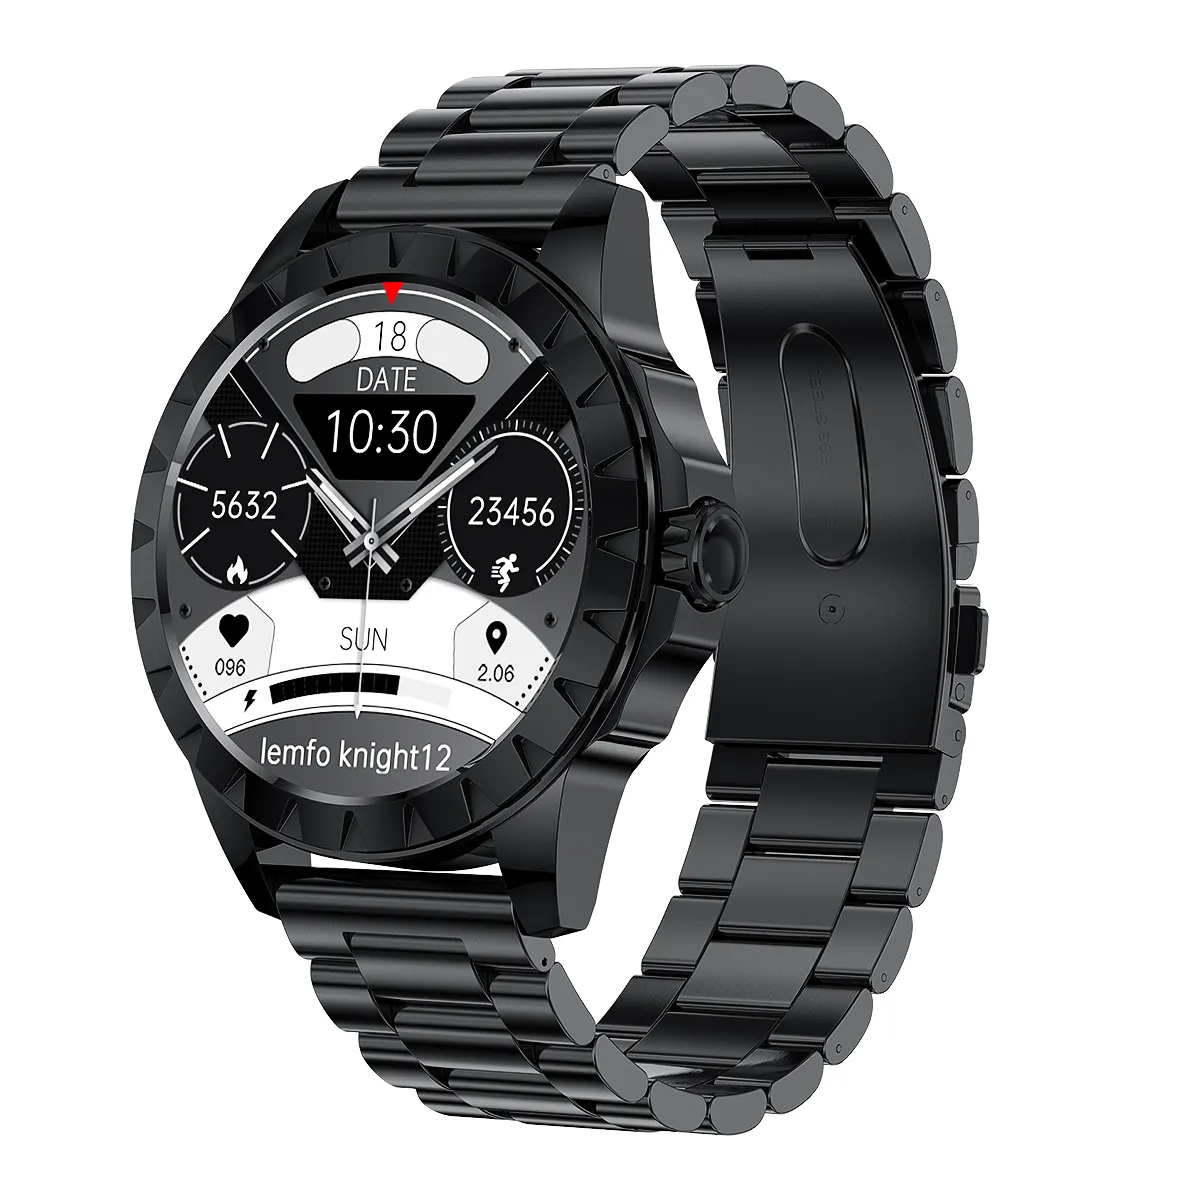 Smartwatch Amoled da 1.39 pollici MTK2523D telefonata controllo musicale PPG + ECG bussola assistente vocale orologi intelligenti per uomo